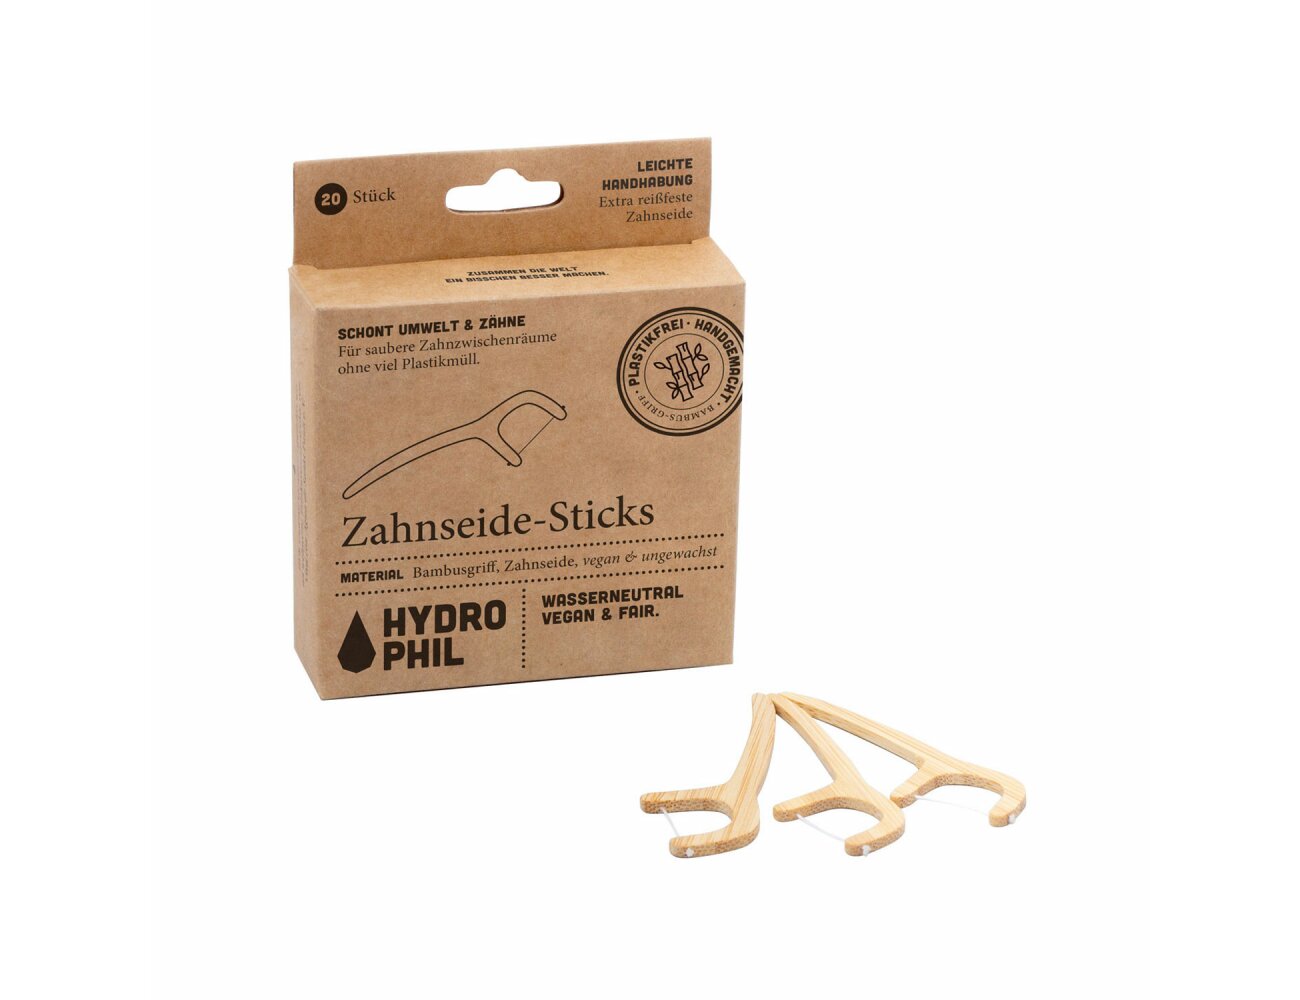 Hydrophil Zahnseide-Sticks, 20 Stück